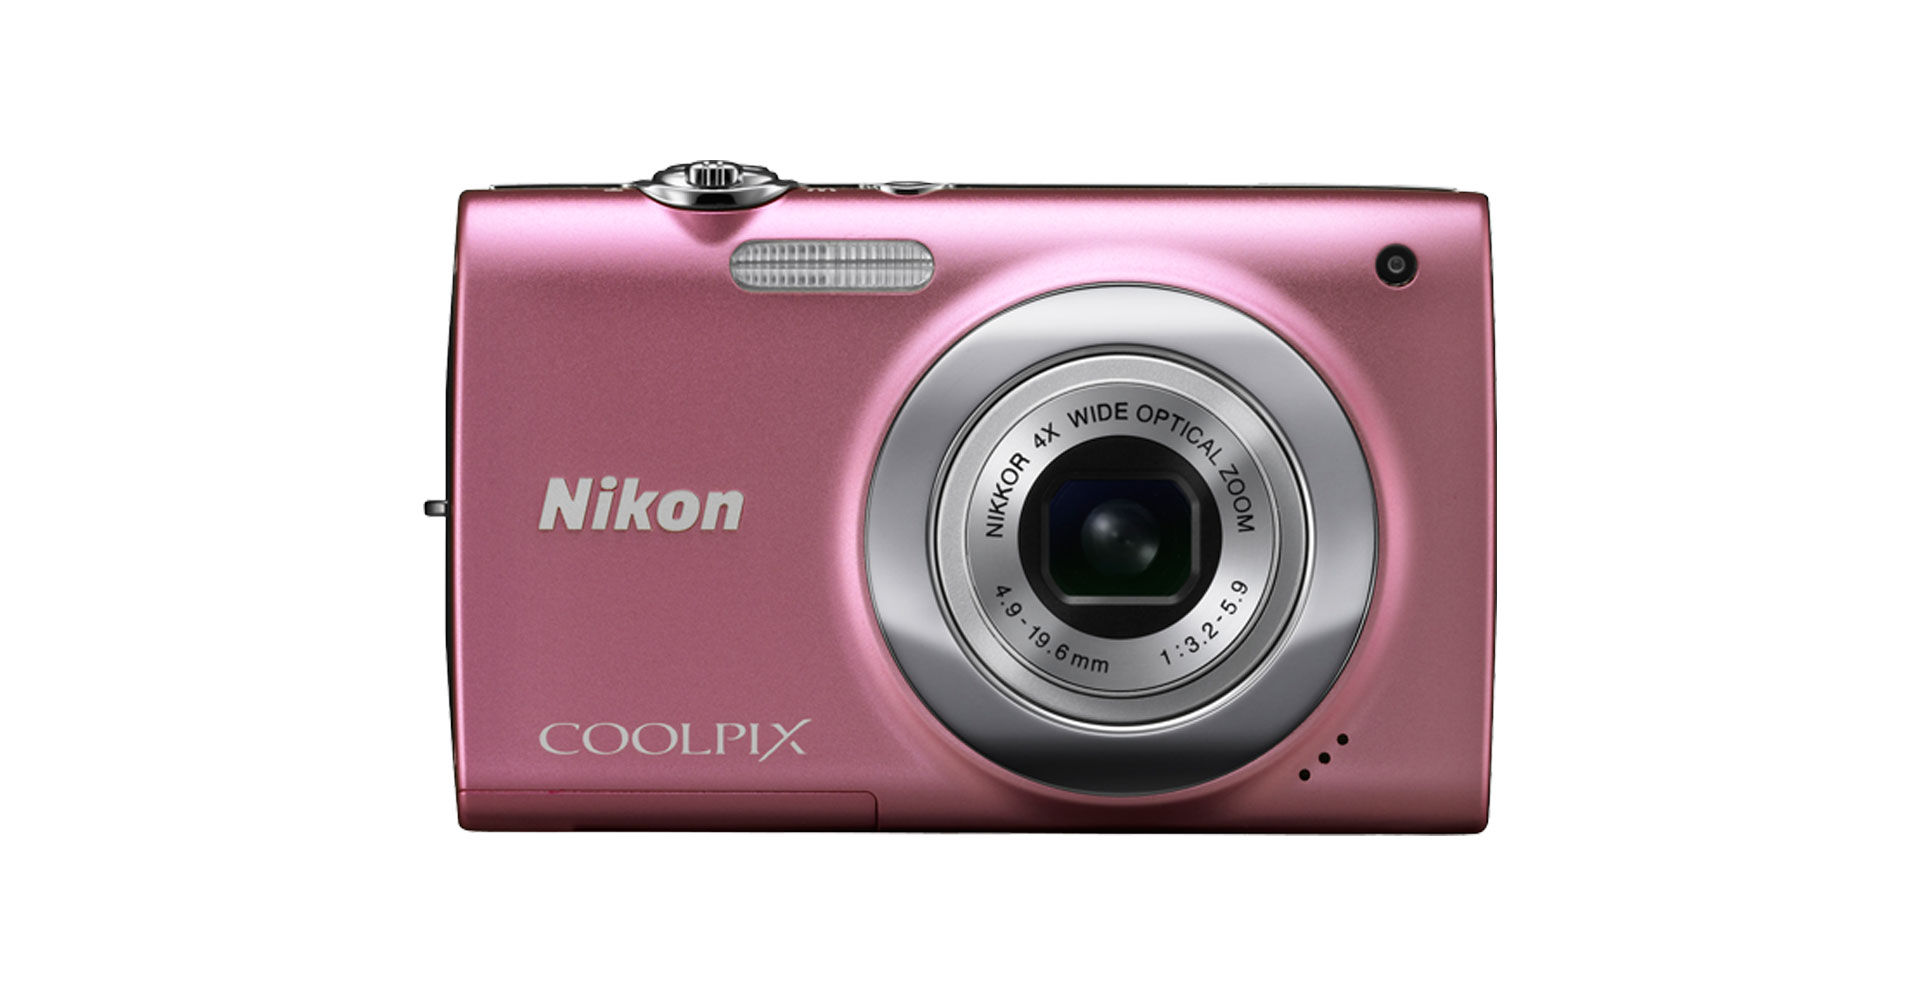 กระแส Y2K มาแรง! เผยยอด Google Search ค้นกล้อง Nikon Coolpix เพิ่มขึ้นทะลุ 8,500%